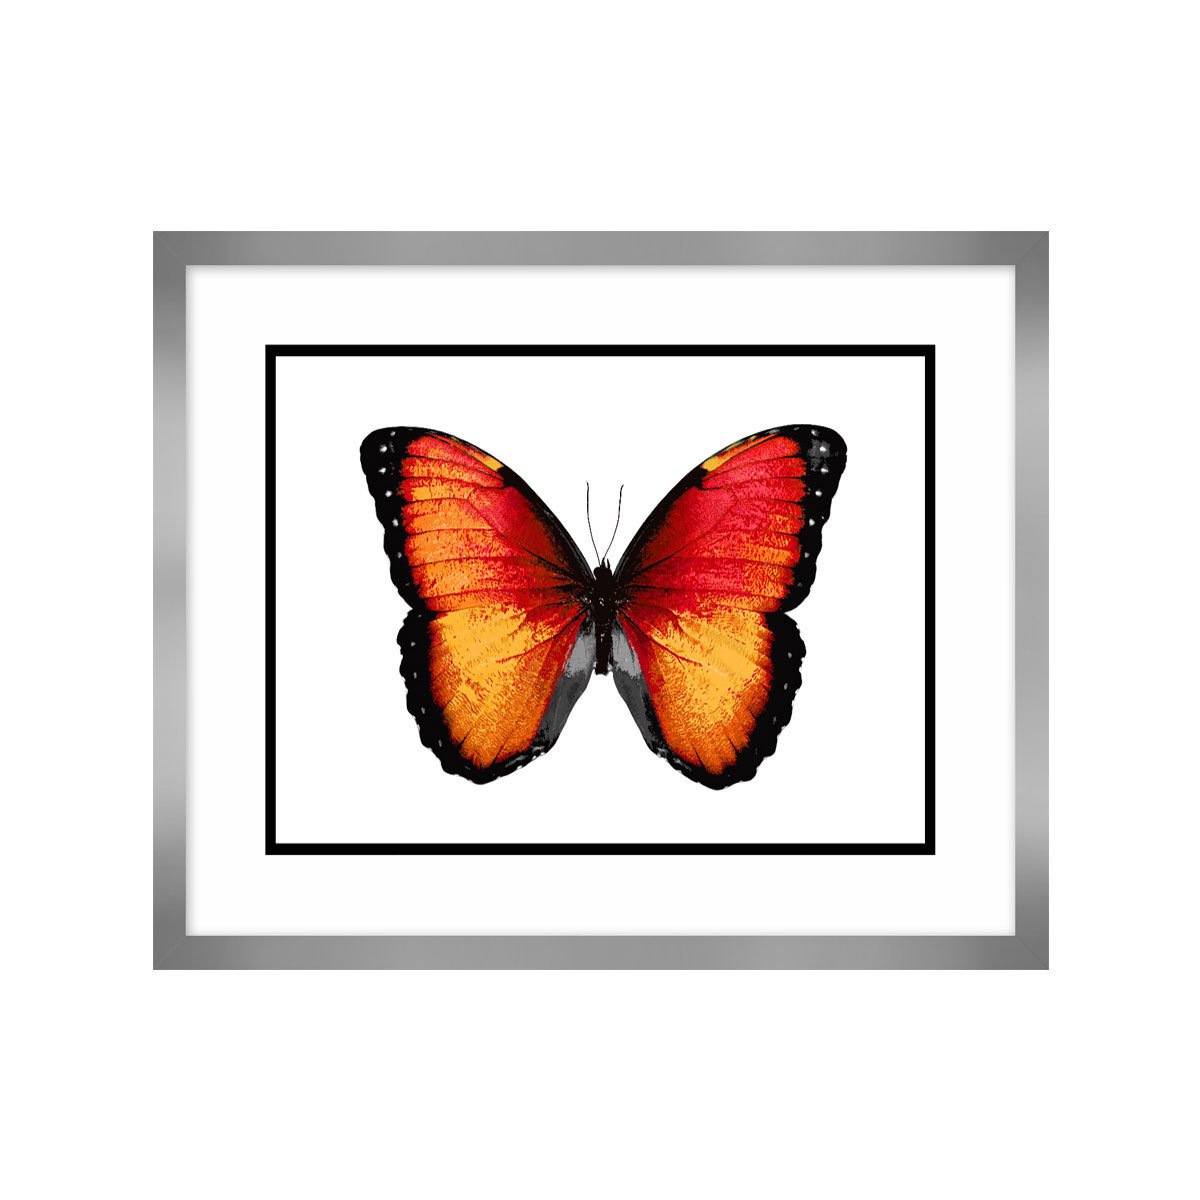 Cuadro Vibrant Butterfly Vi Carre 56 X 45 Cm